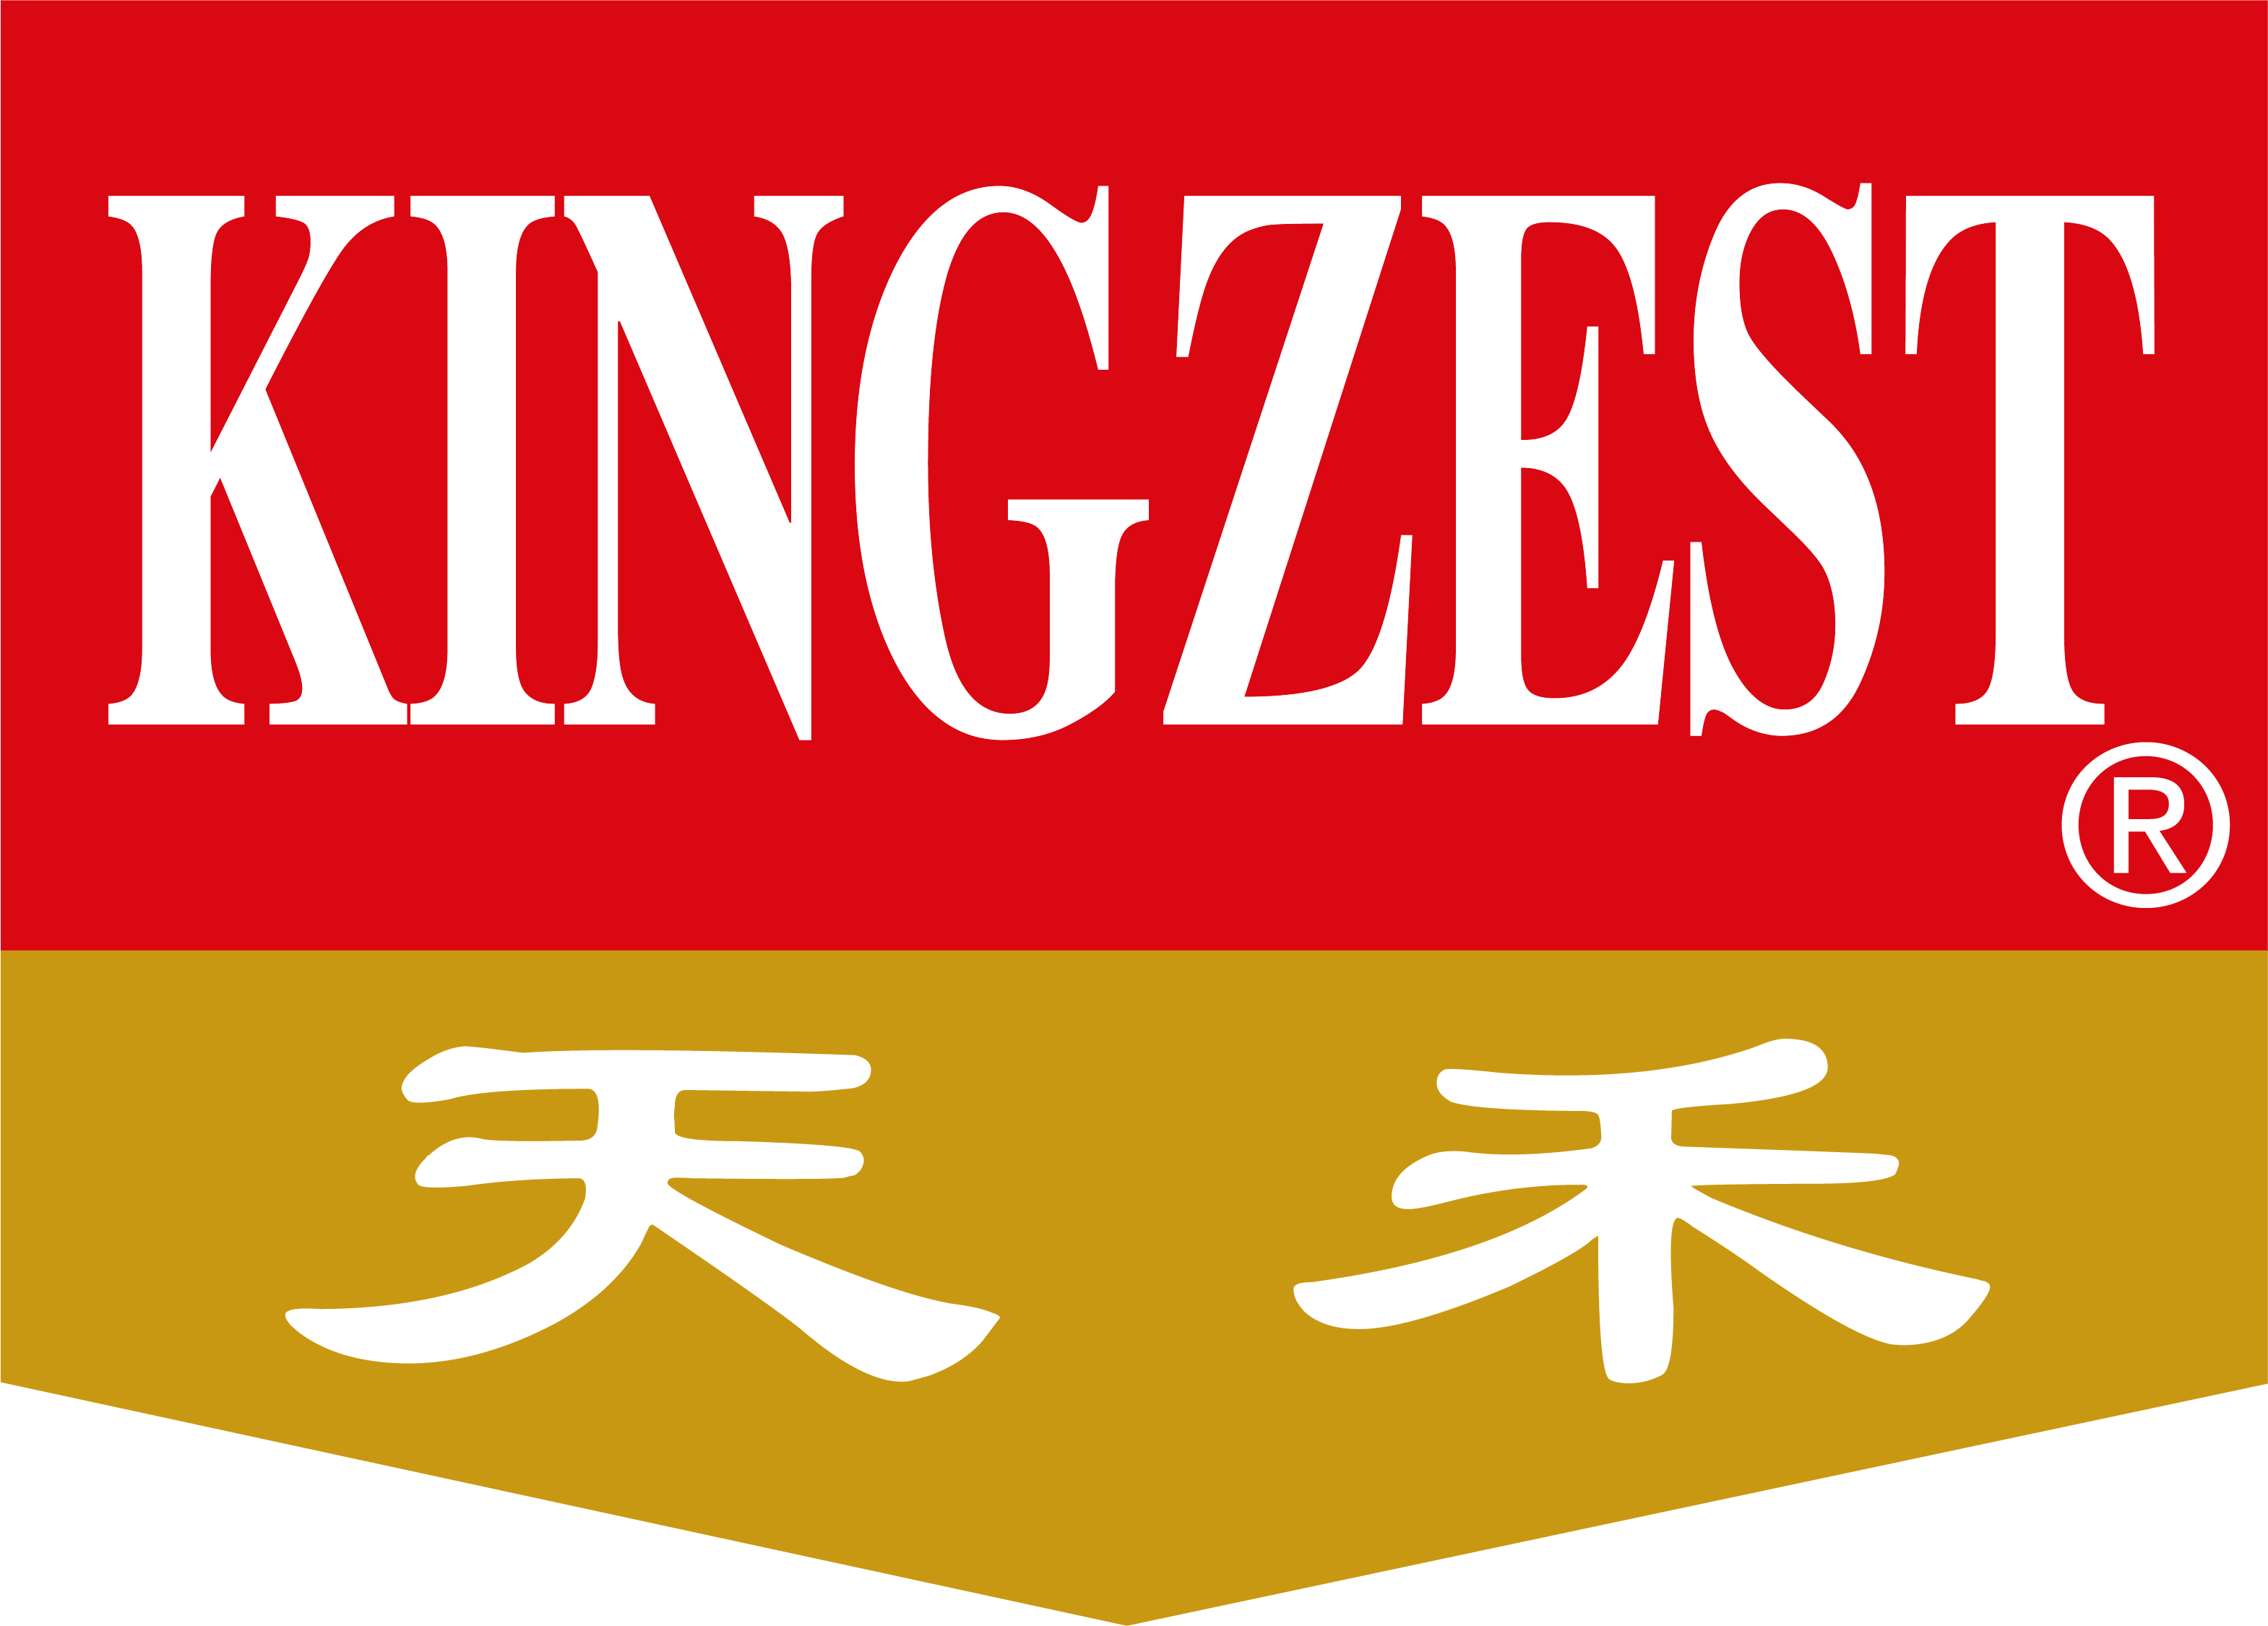 Kingzest